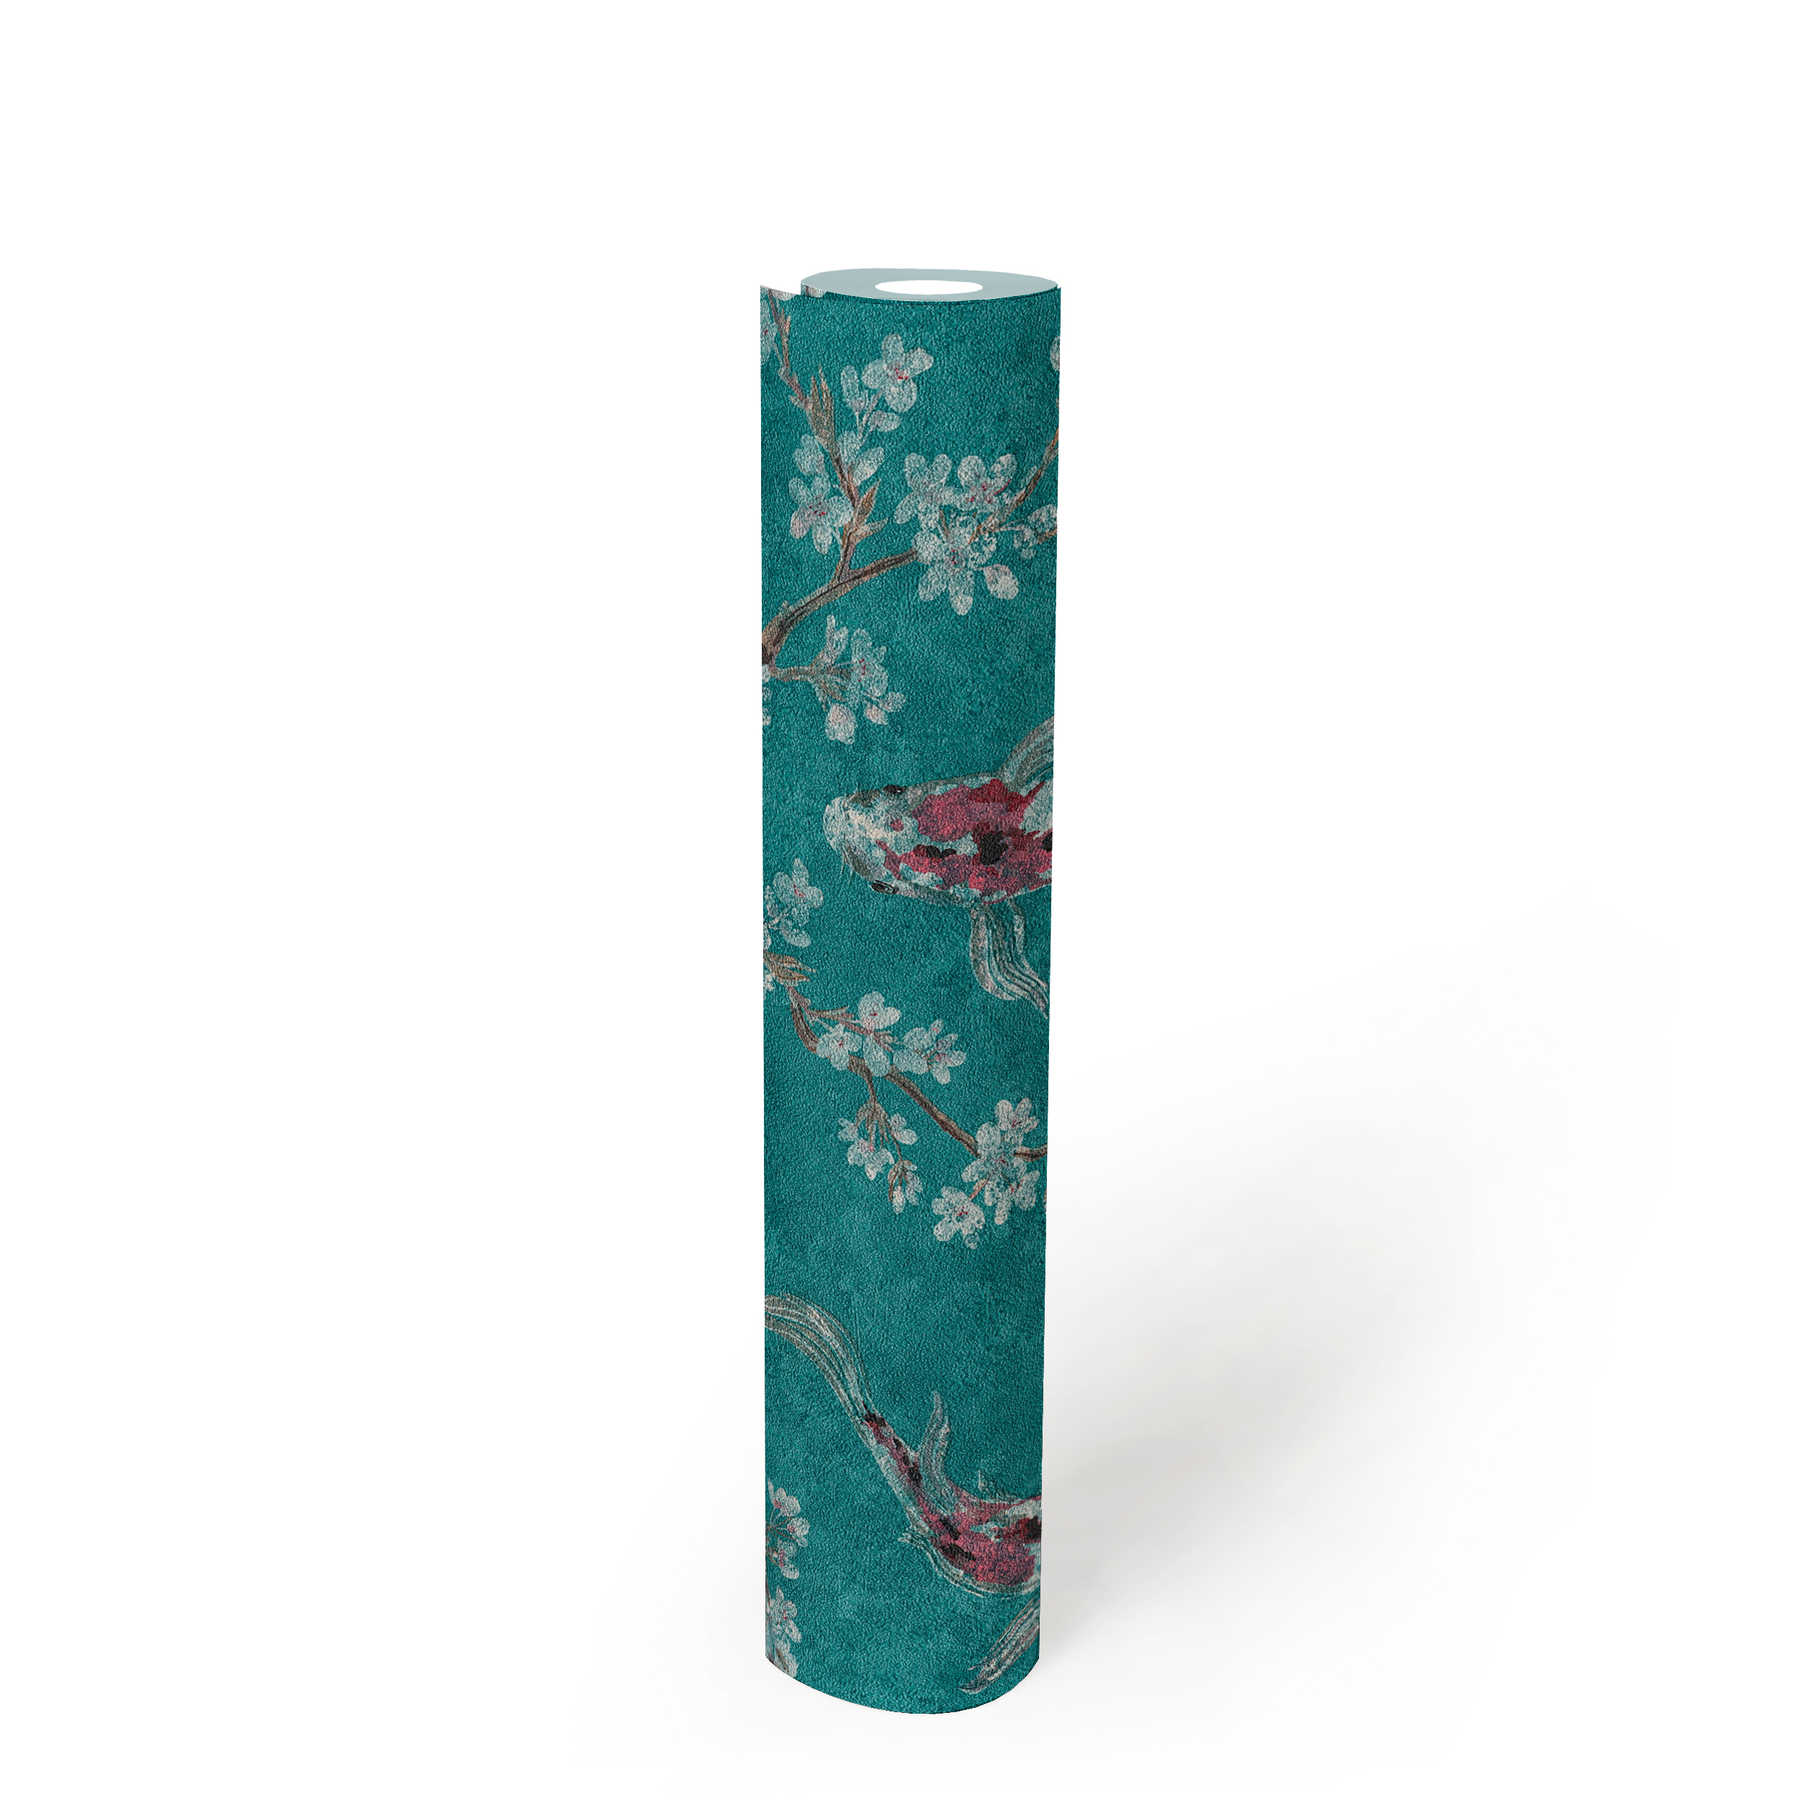             Aziatisch vliesbehang met koi patroon - blauw, groen, rood
        